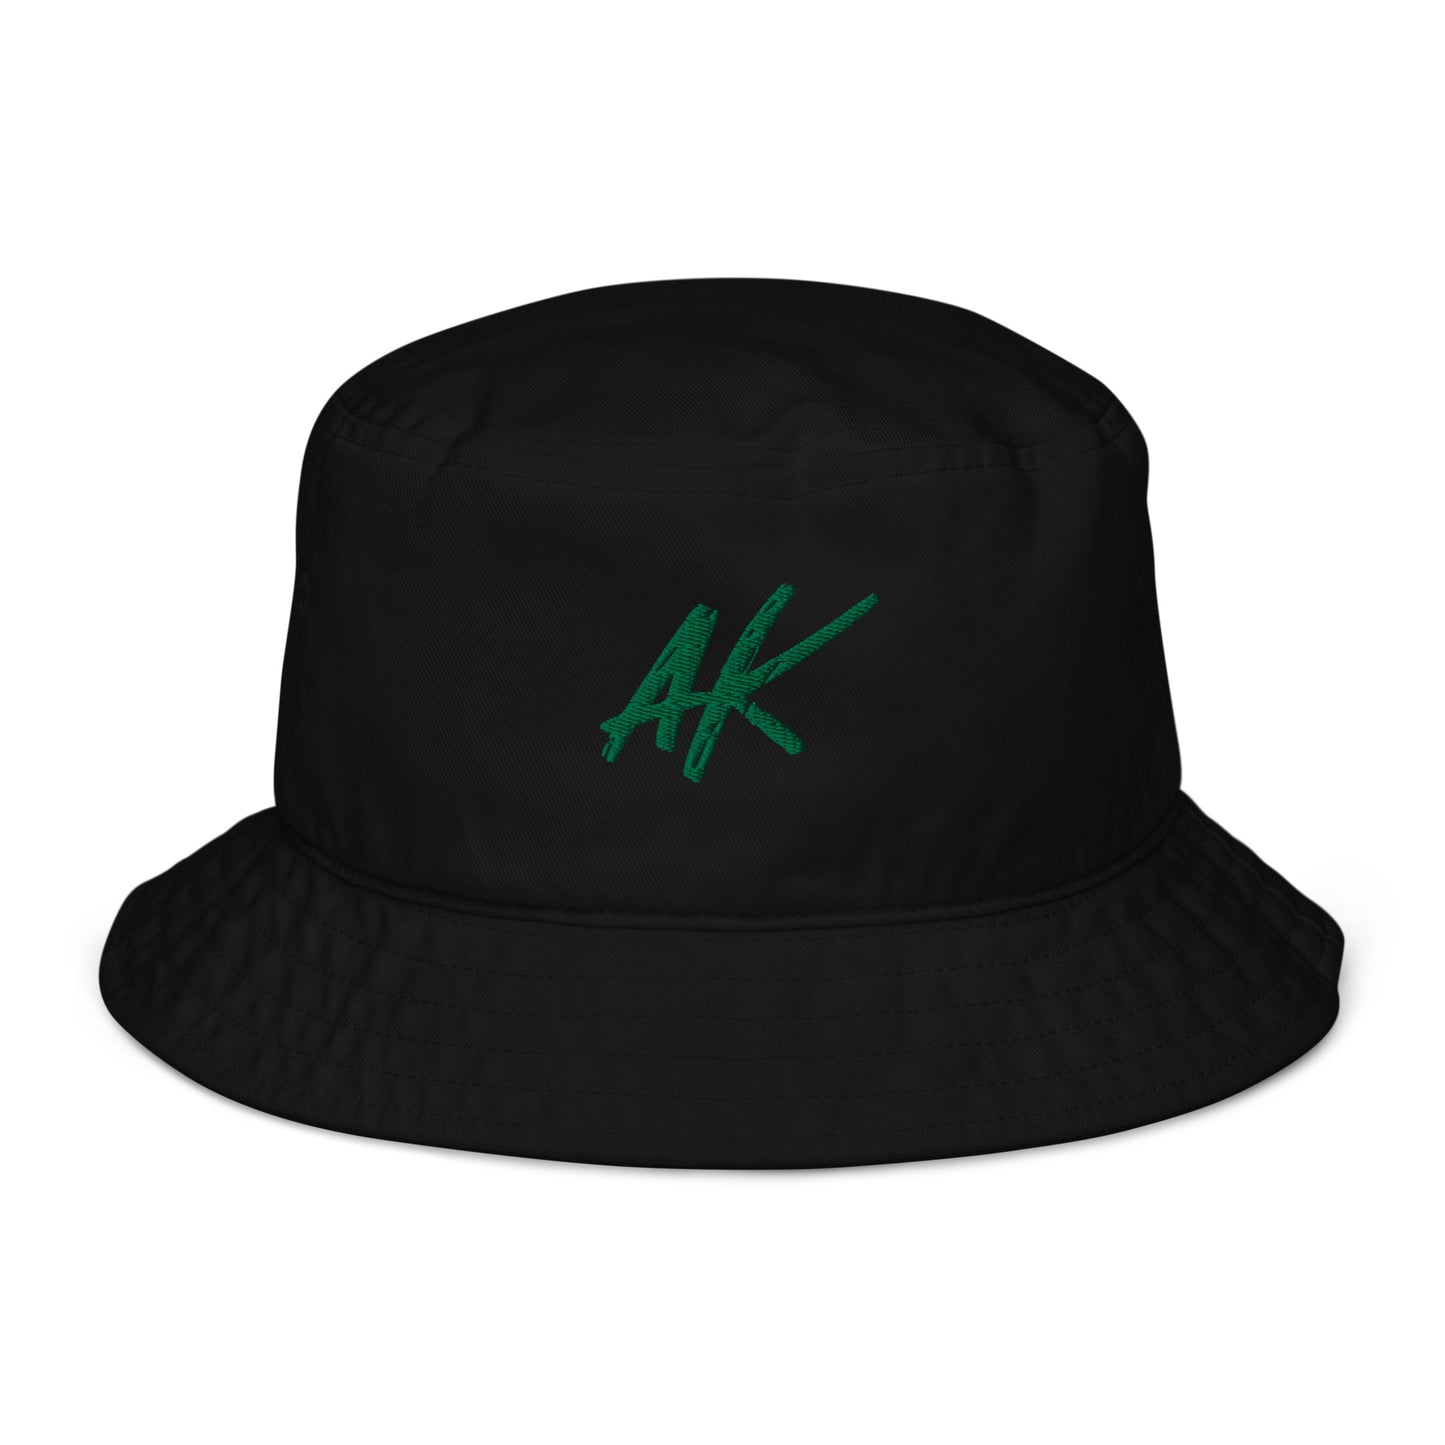 AK bucket hat (green)